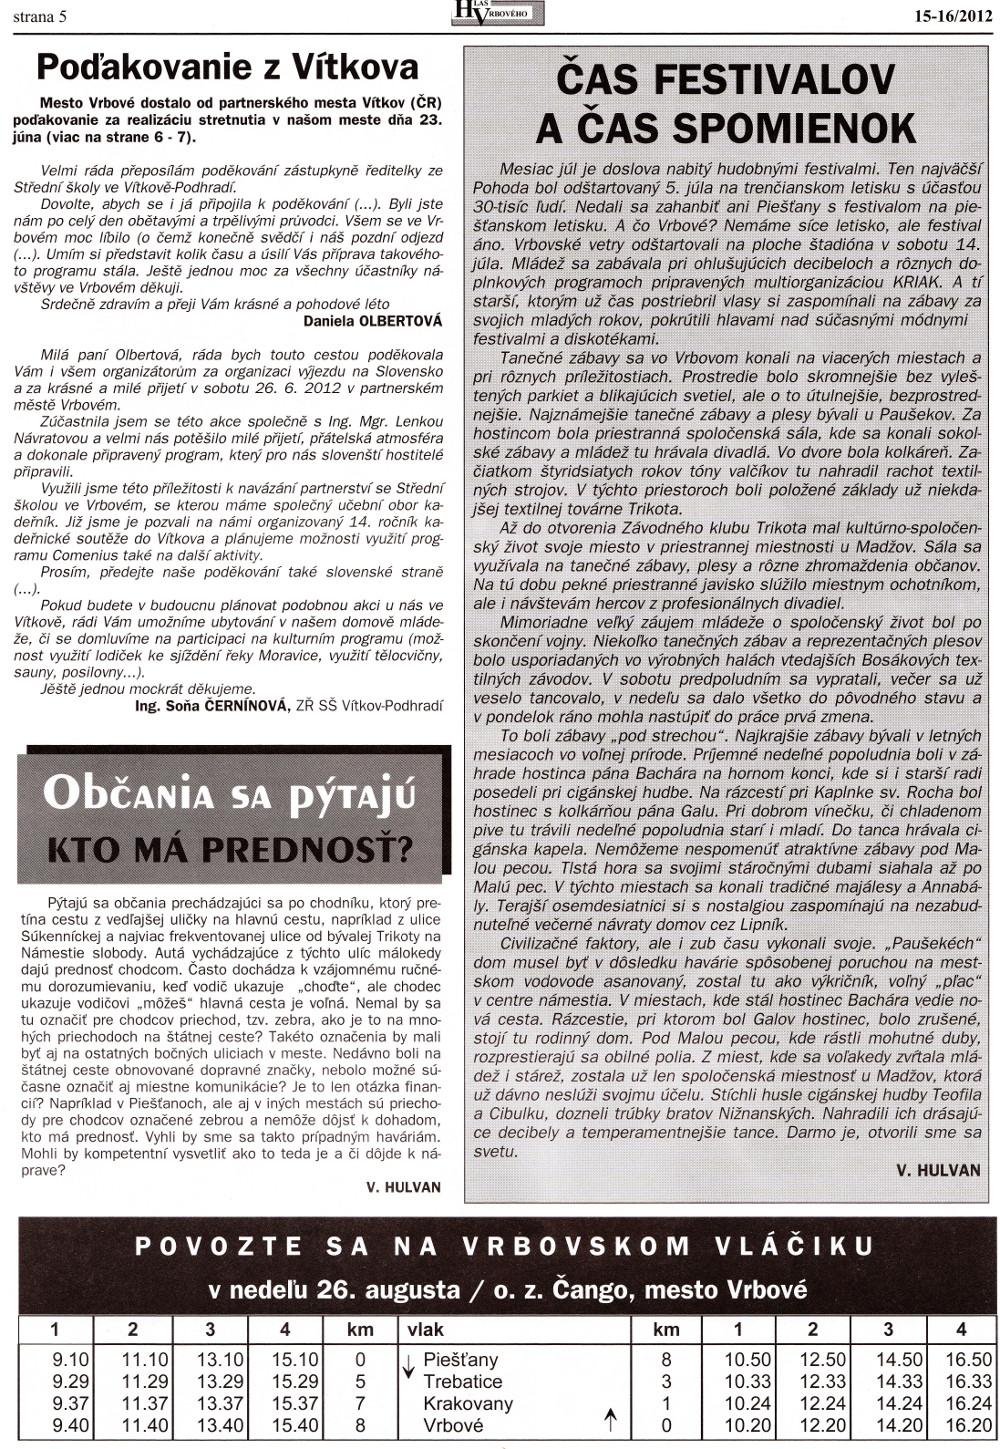 Hlas Vrbového 15-16/2012, strana 5